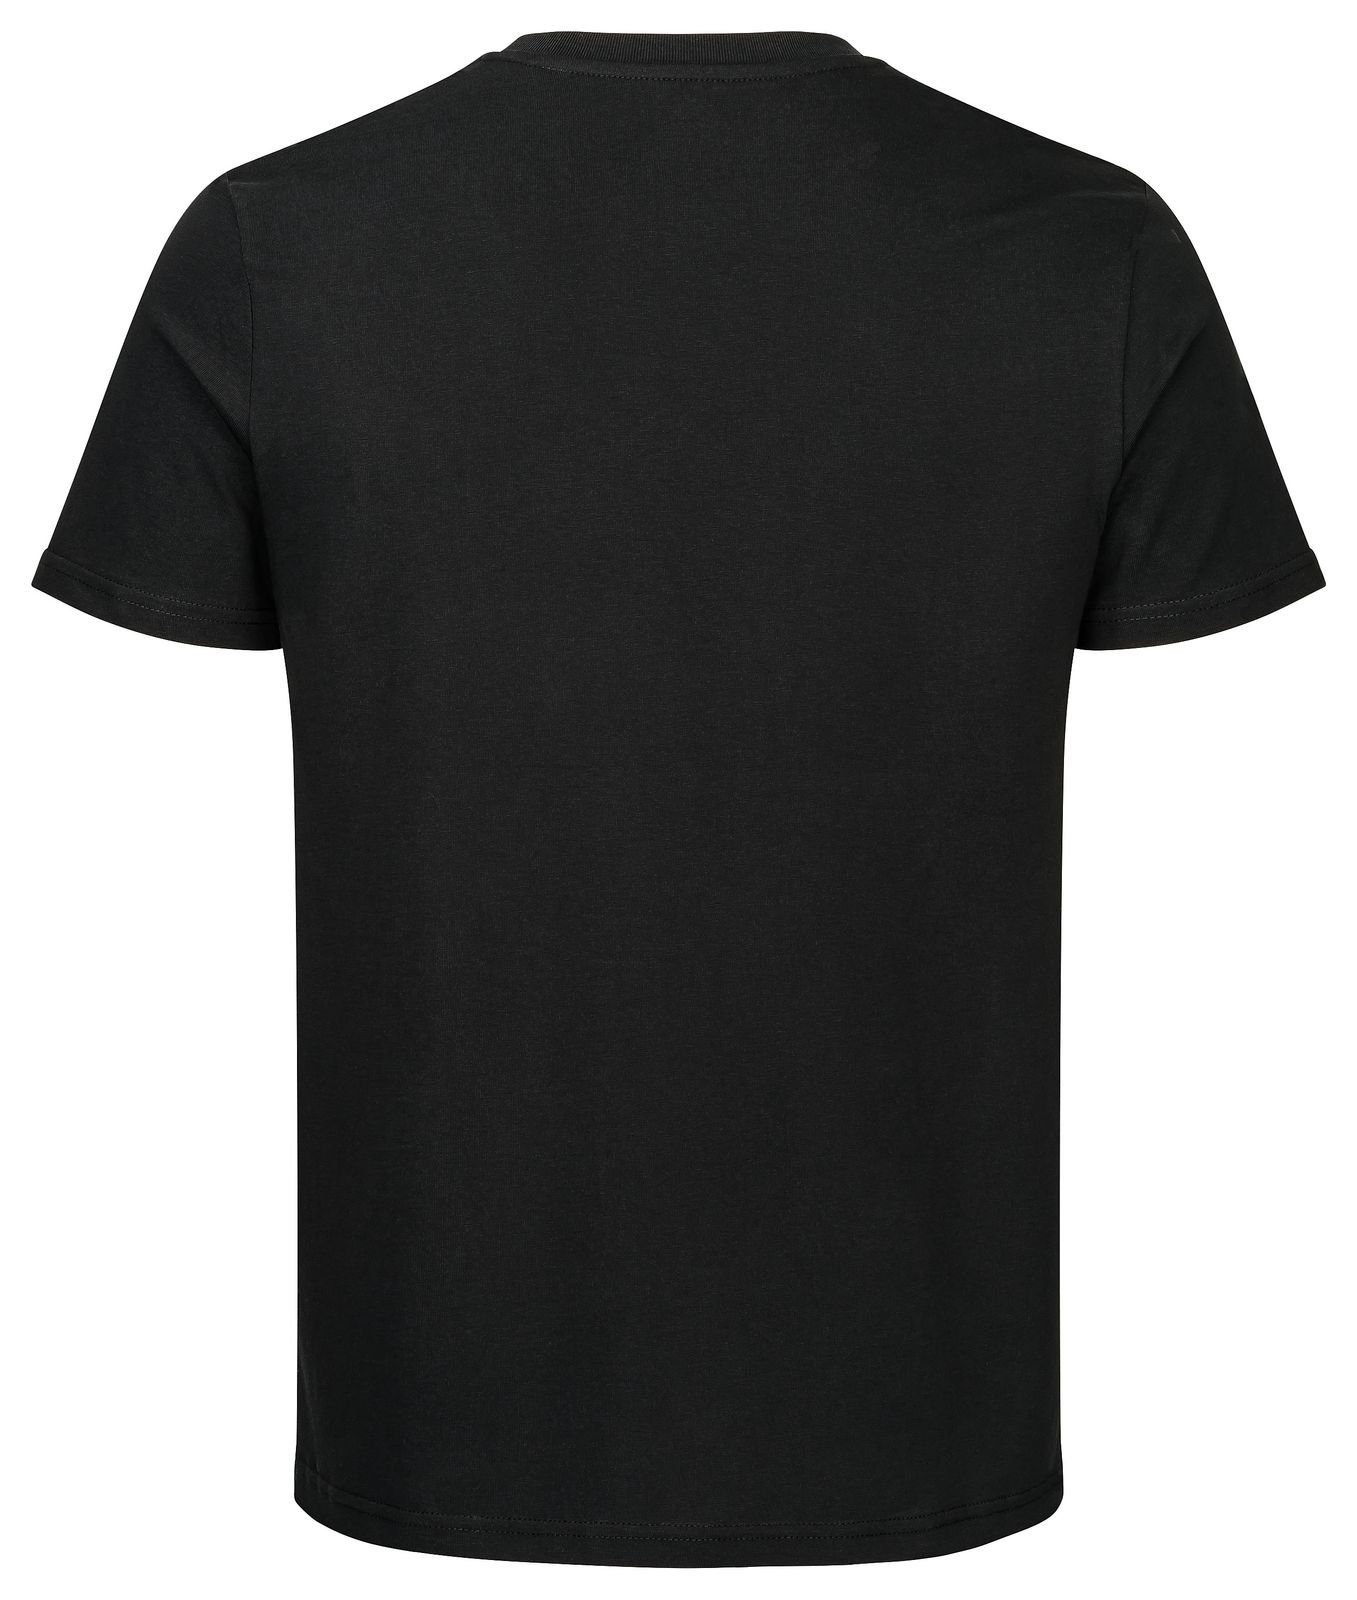 nachhaltig T-Shirt fair 100% schwarz Biobaumwolle & leather basic Gradnetz unisex